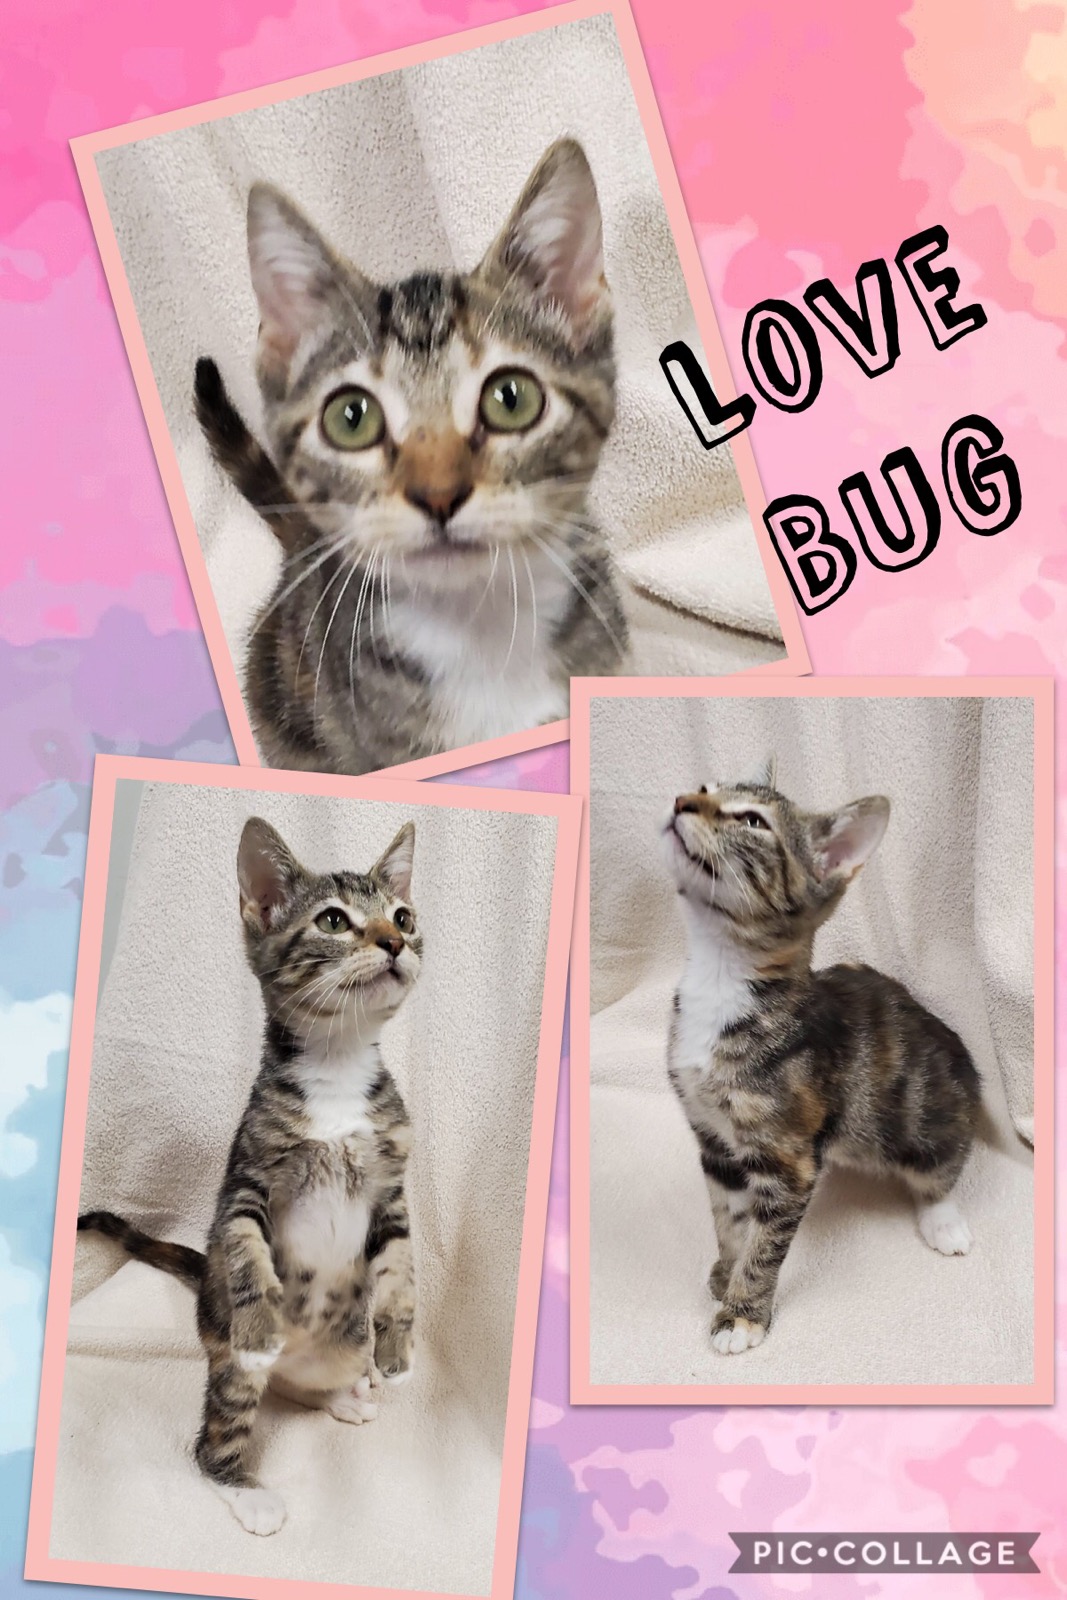 Sulphur Springs Animal Shelter Pet of the Week: Meet Love Bug!